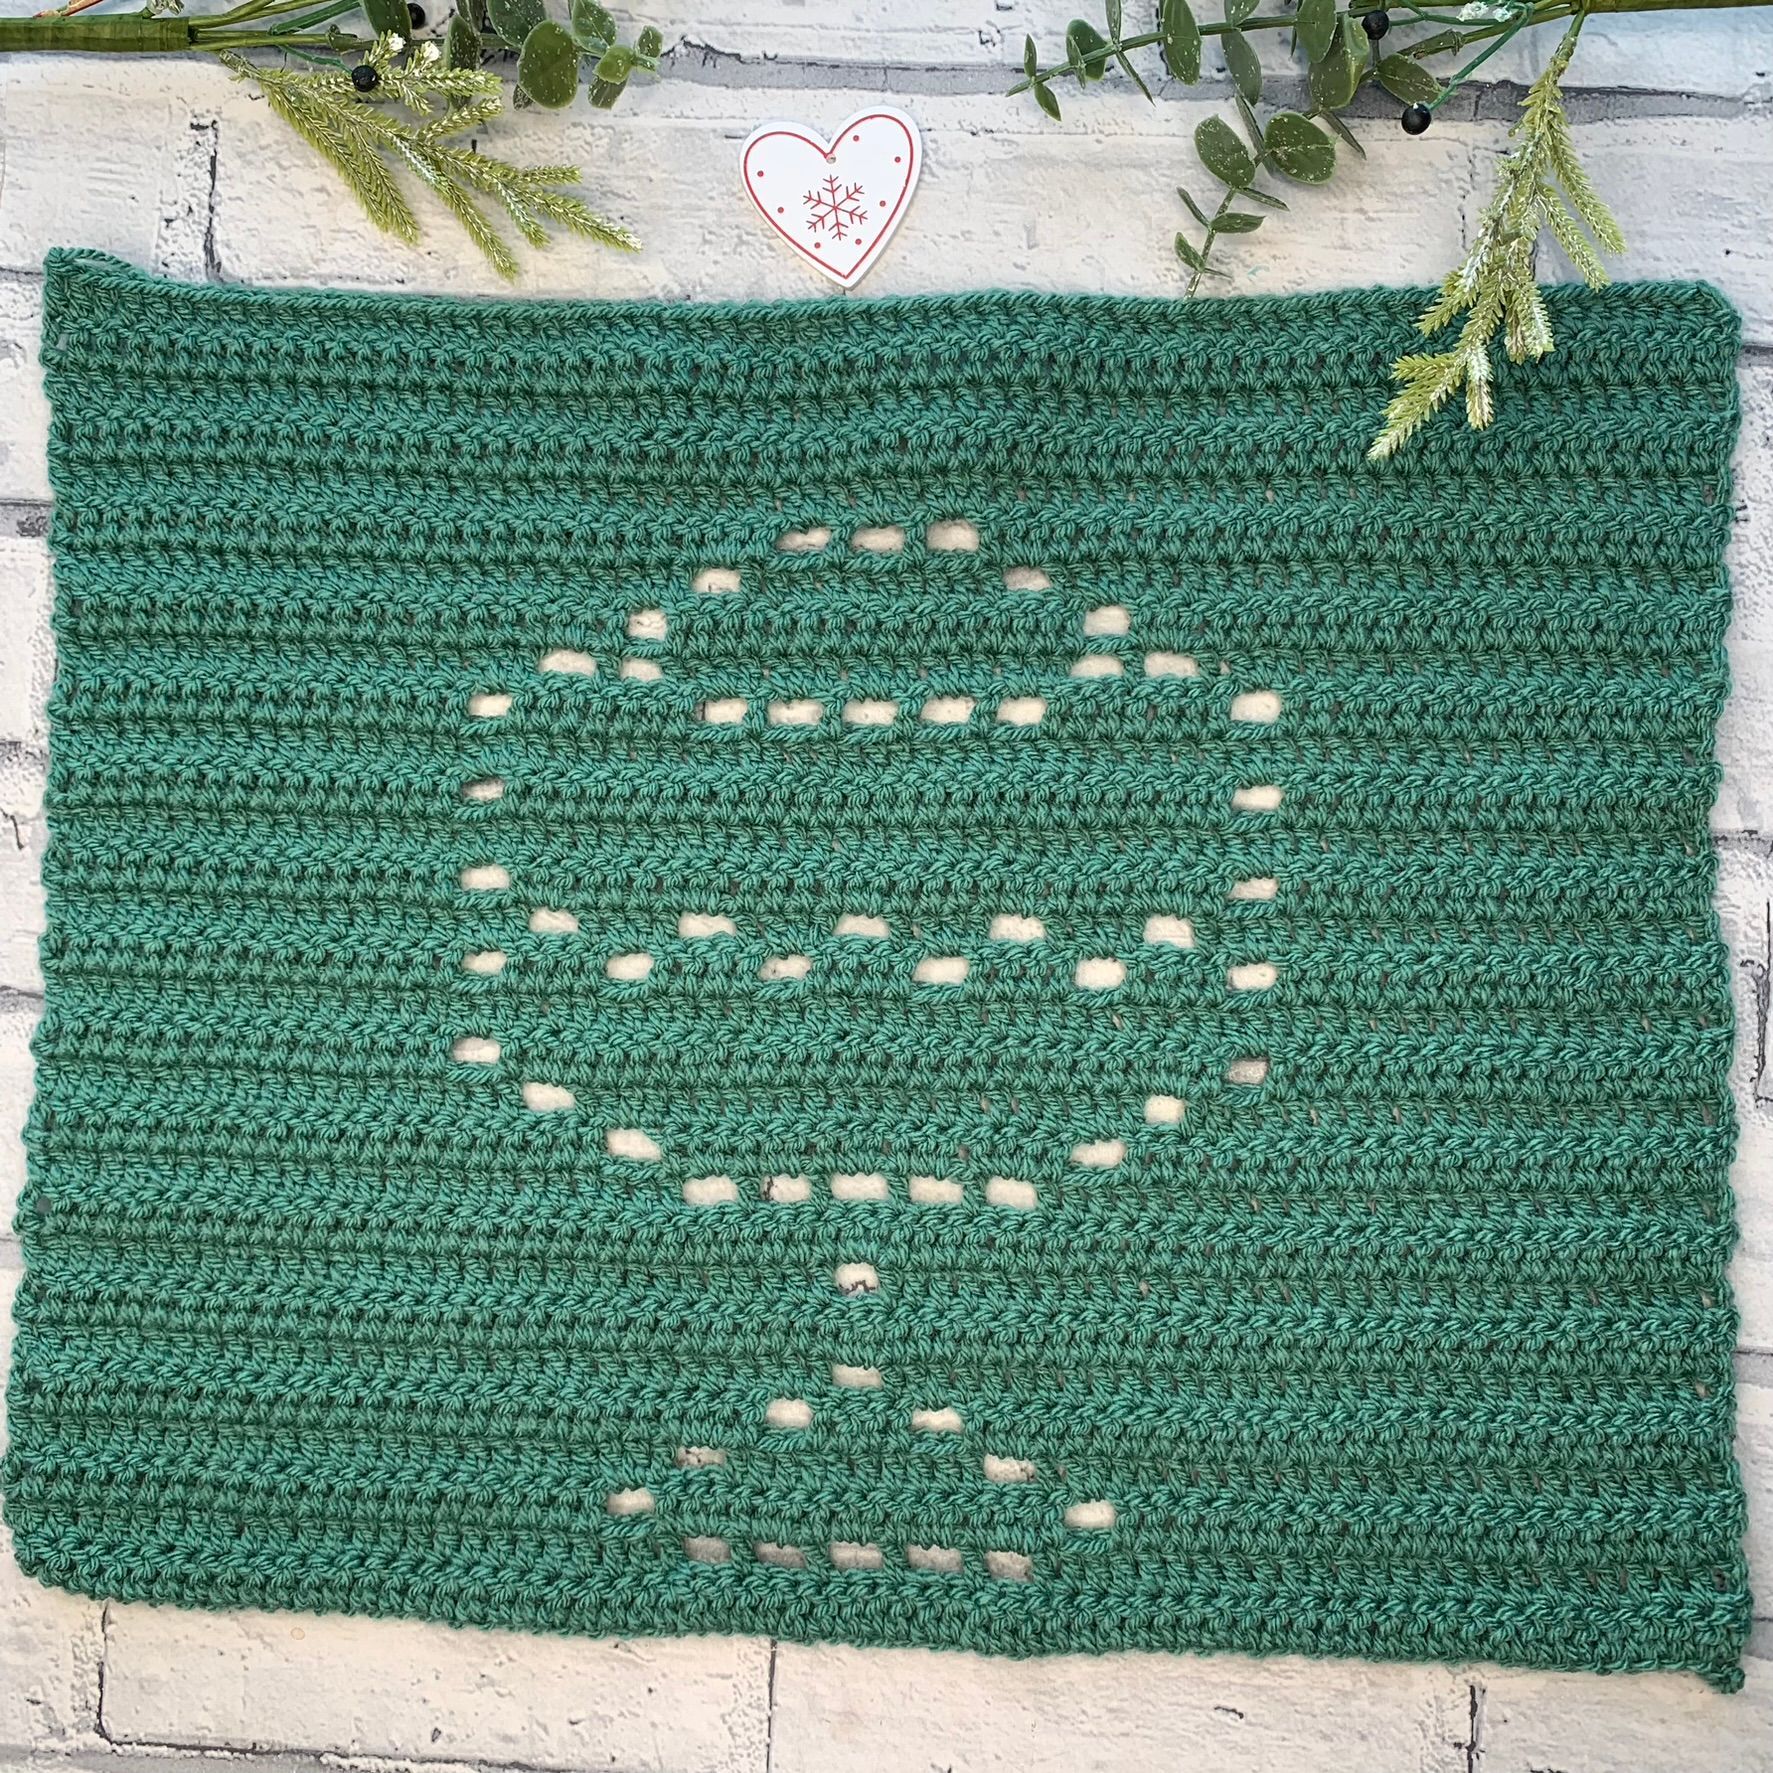 Kwanzaa Unity Cup Filet Crochet Pattern